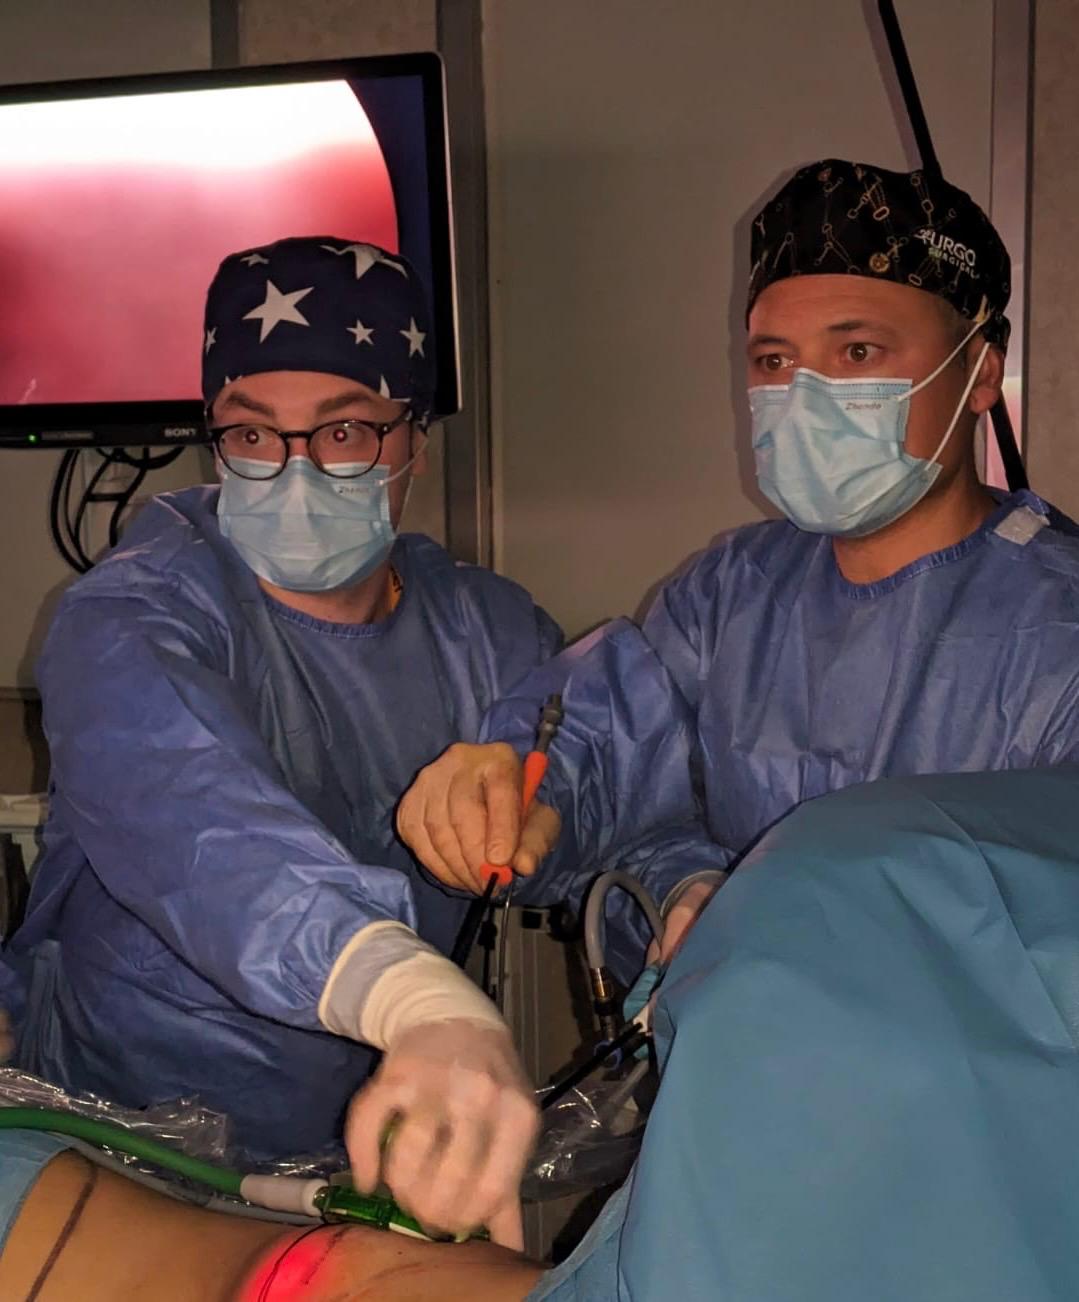  Battipaglia: Ospedale, intervento di ricostruzione mammaria post-mastectomia con nuova tecnica mini-invasiva  